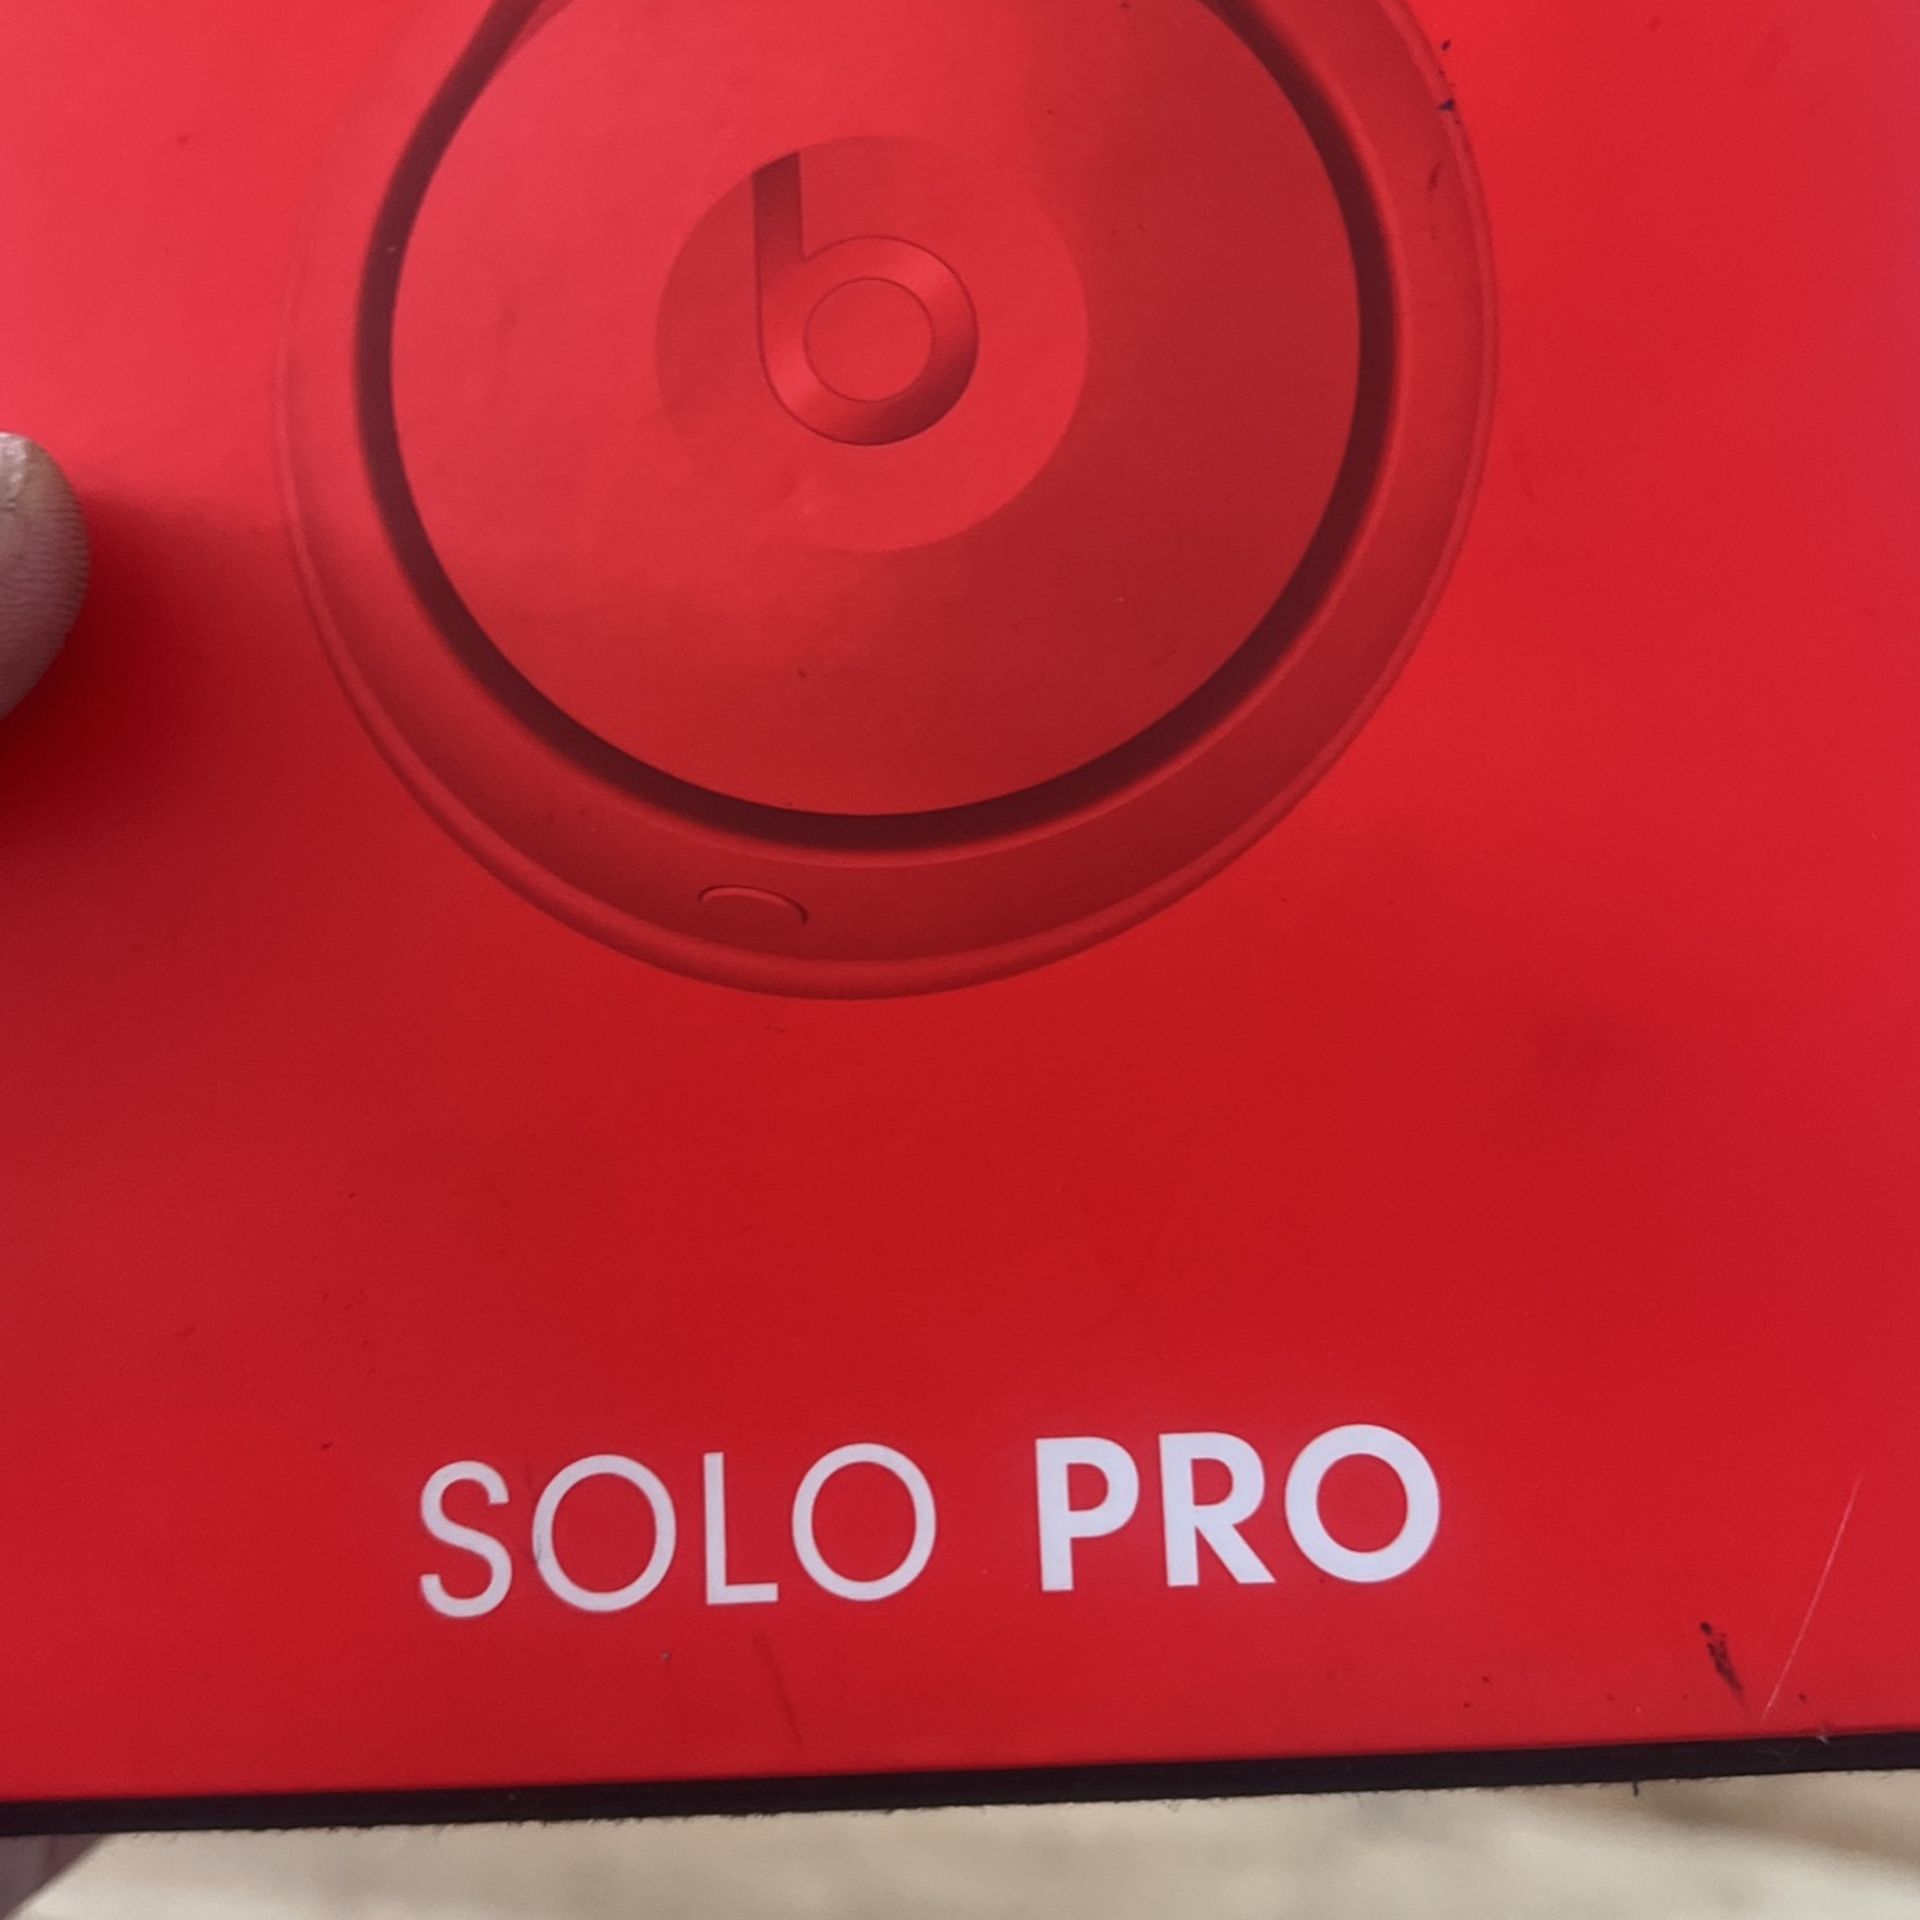 Solo Pro Beats By Dre 